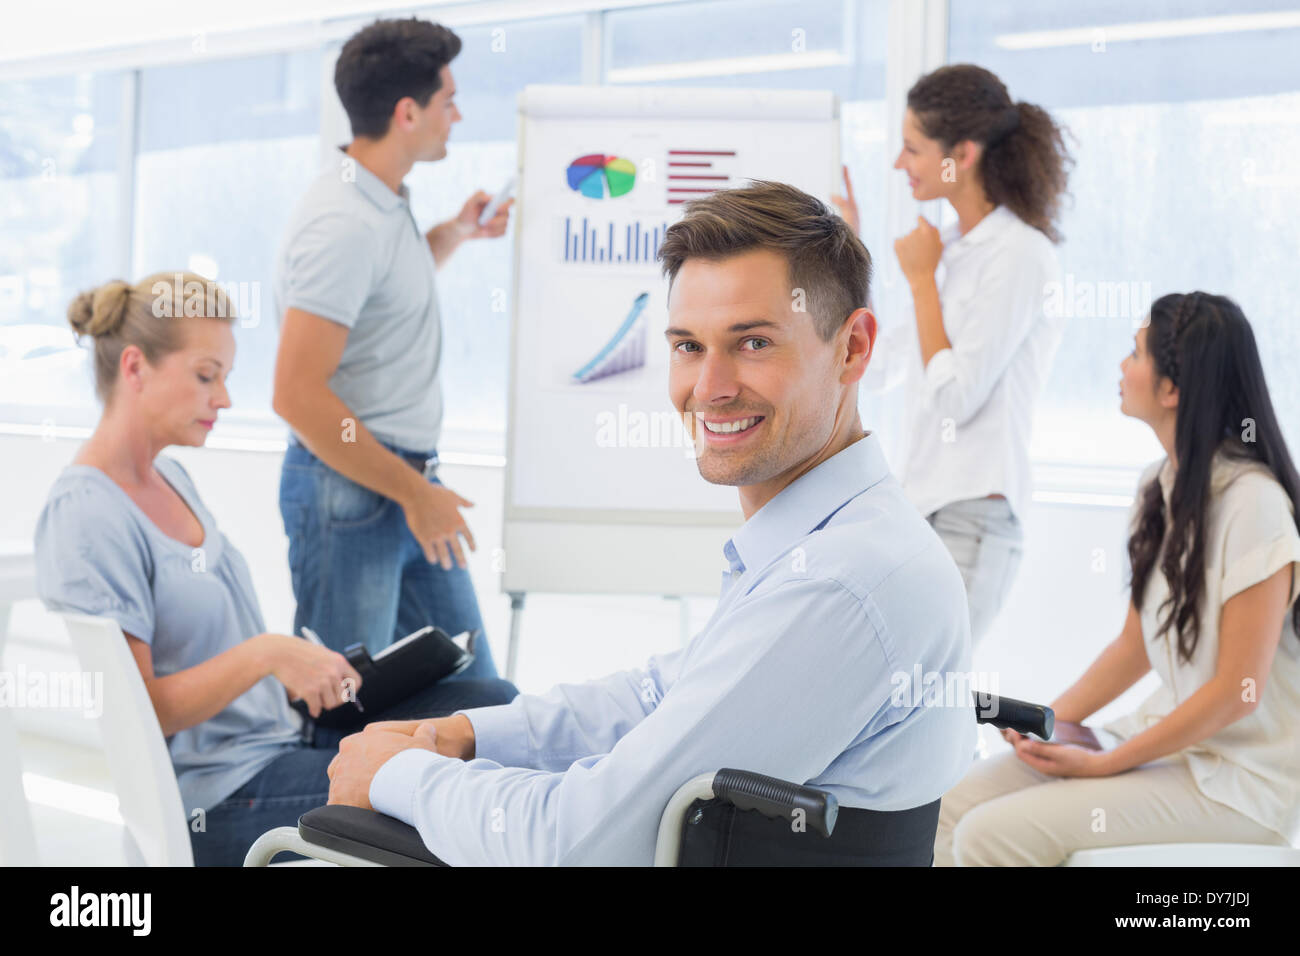 Lässige Geschäftsmann im Rollstuhl lächelnd in die Kamera während der Präsentation Stockfoto